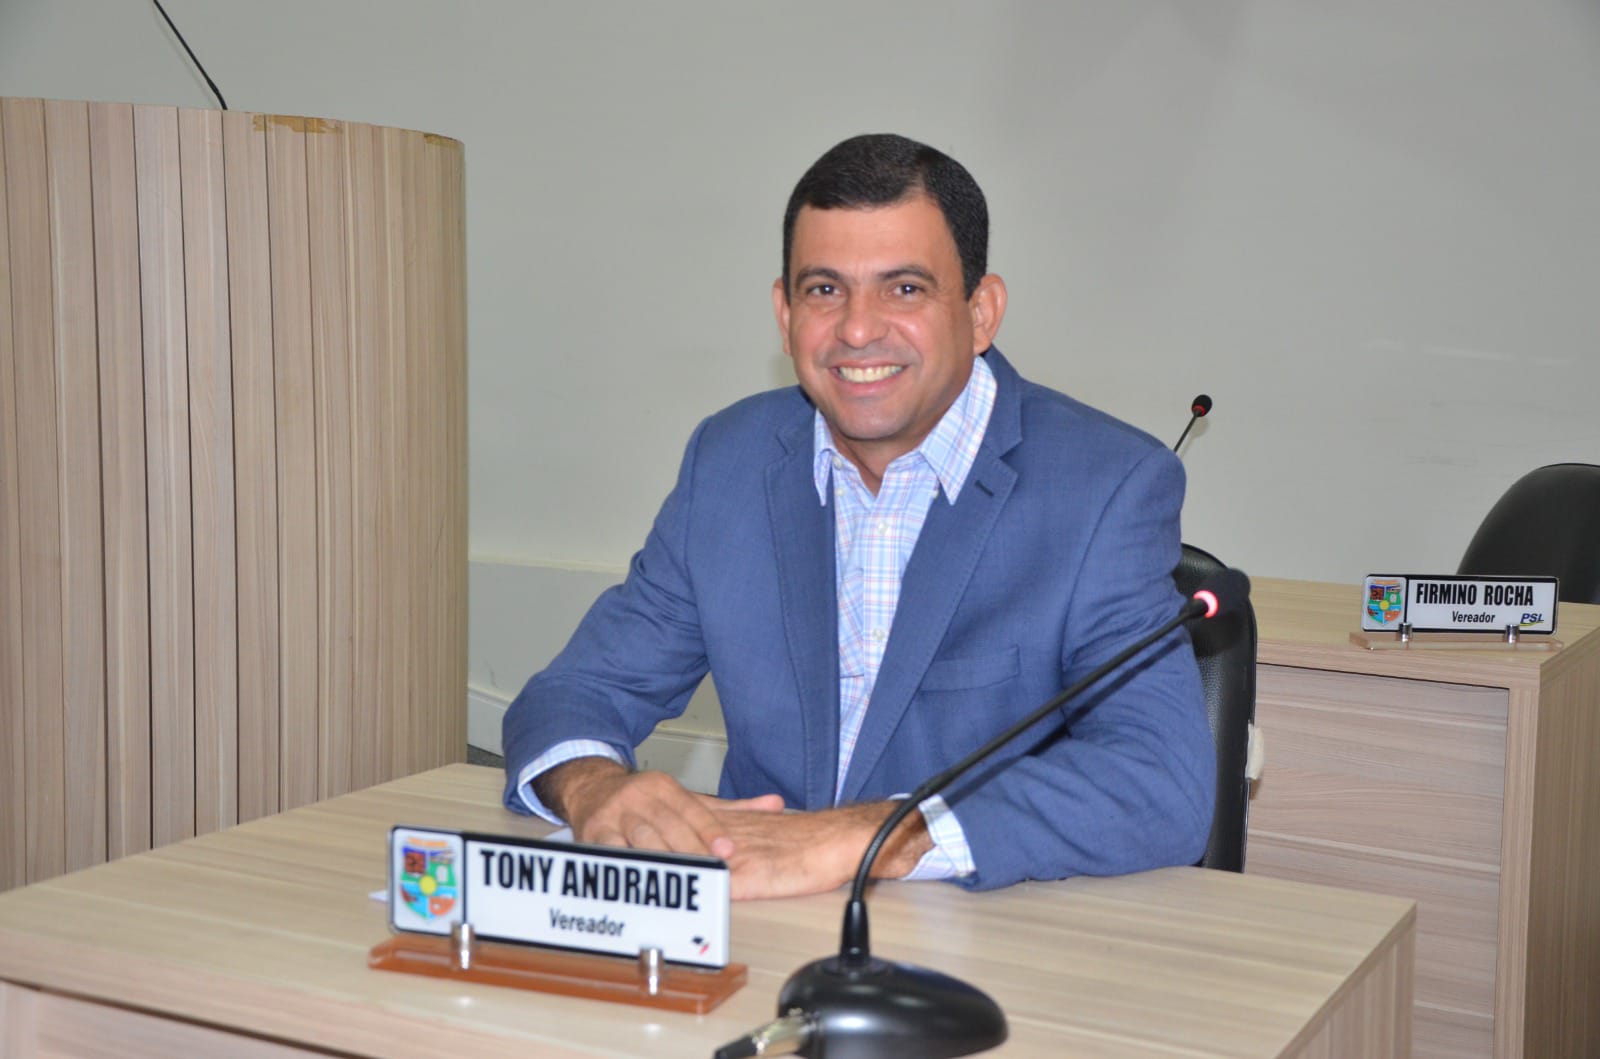 Vereador Tony Andrade apresenta indicações cobrando ações nas áreas da infraestrutura, iluminação, pavimentação asfáltica em vários setores e no distrito de Escola Brasil